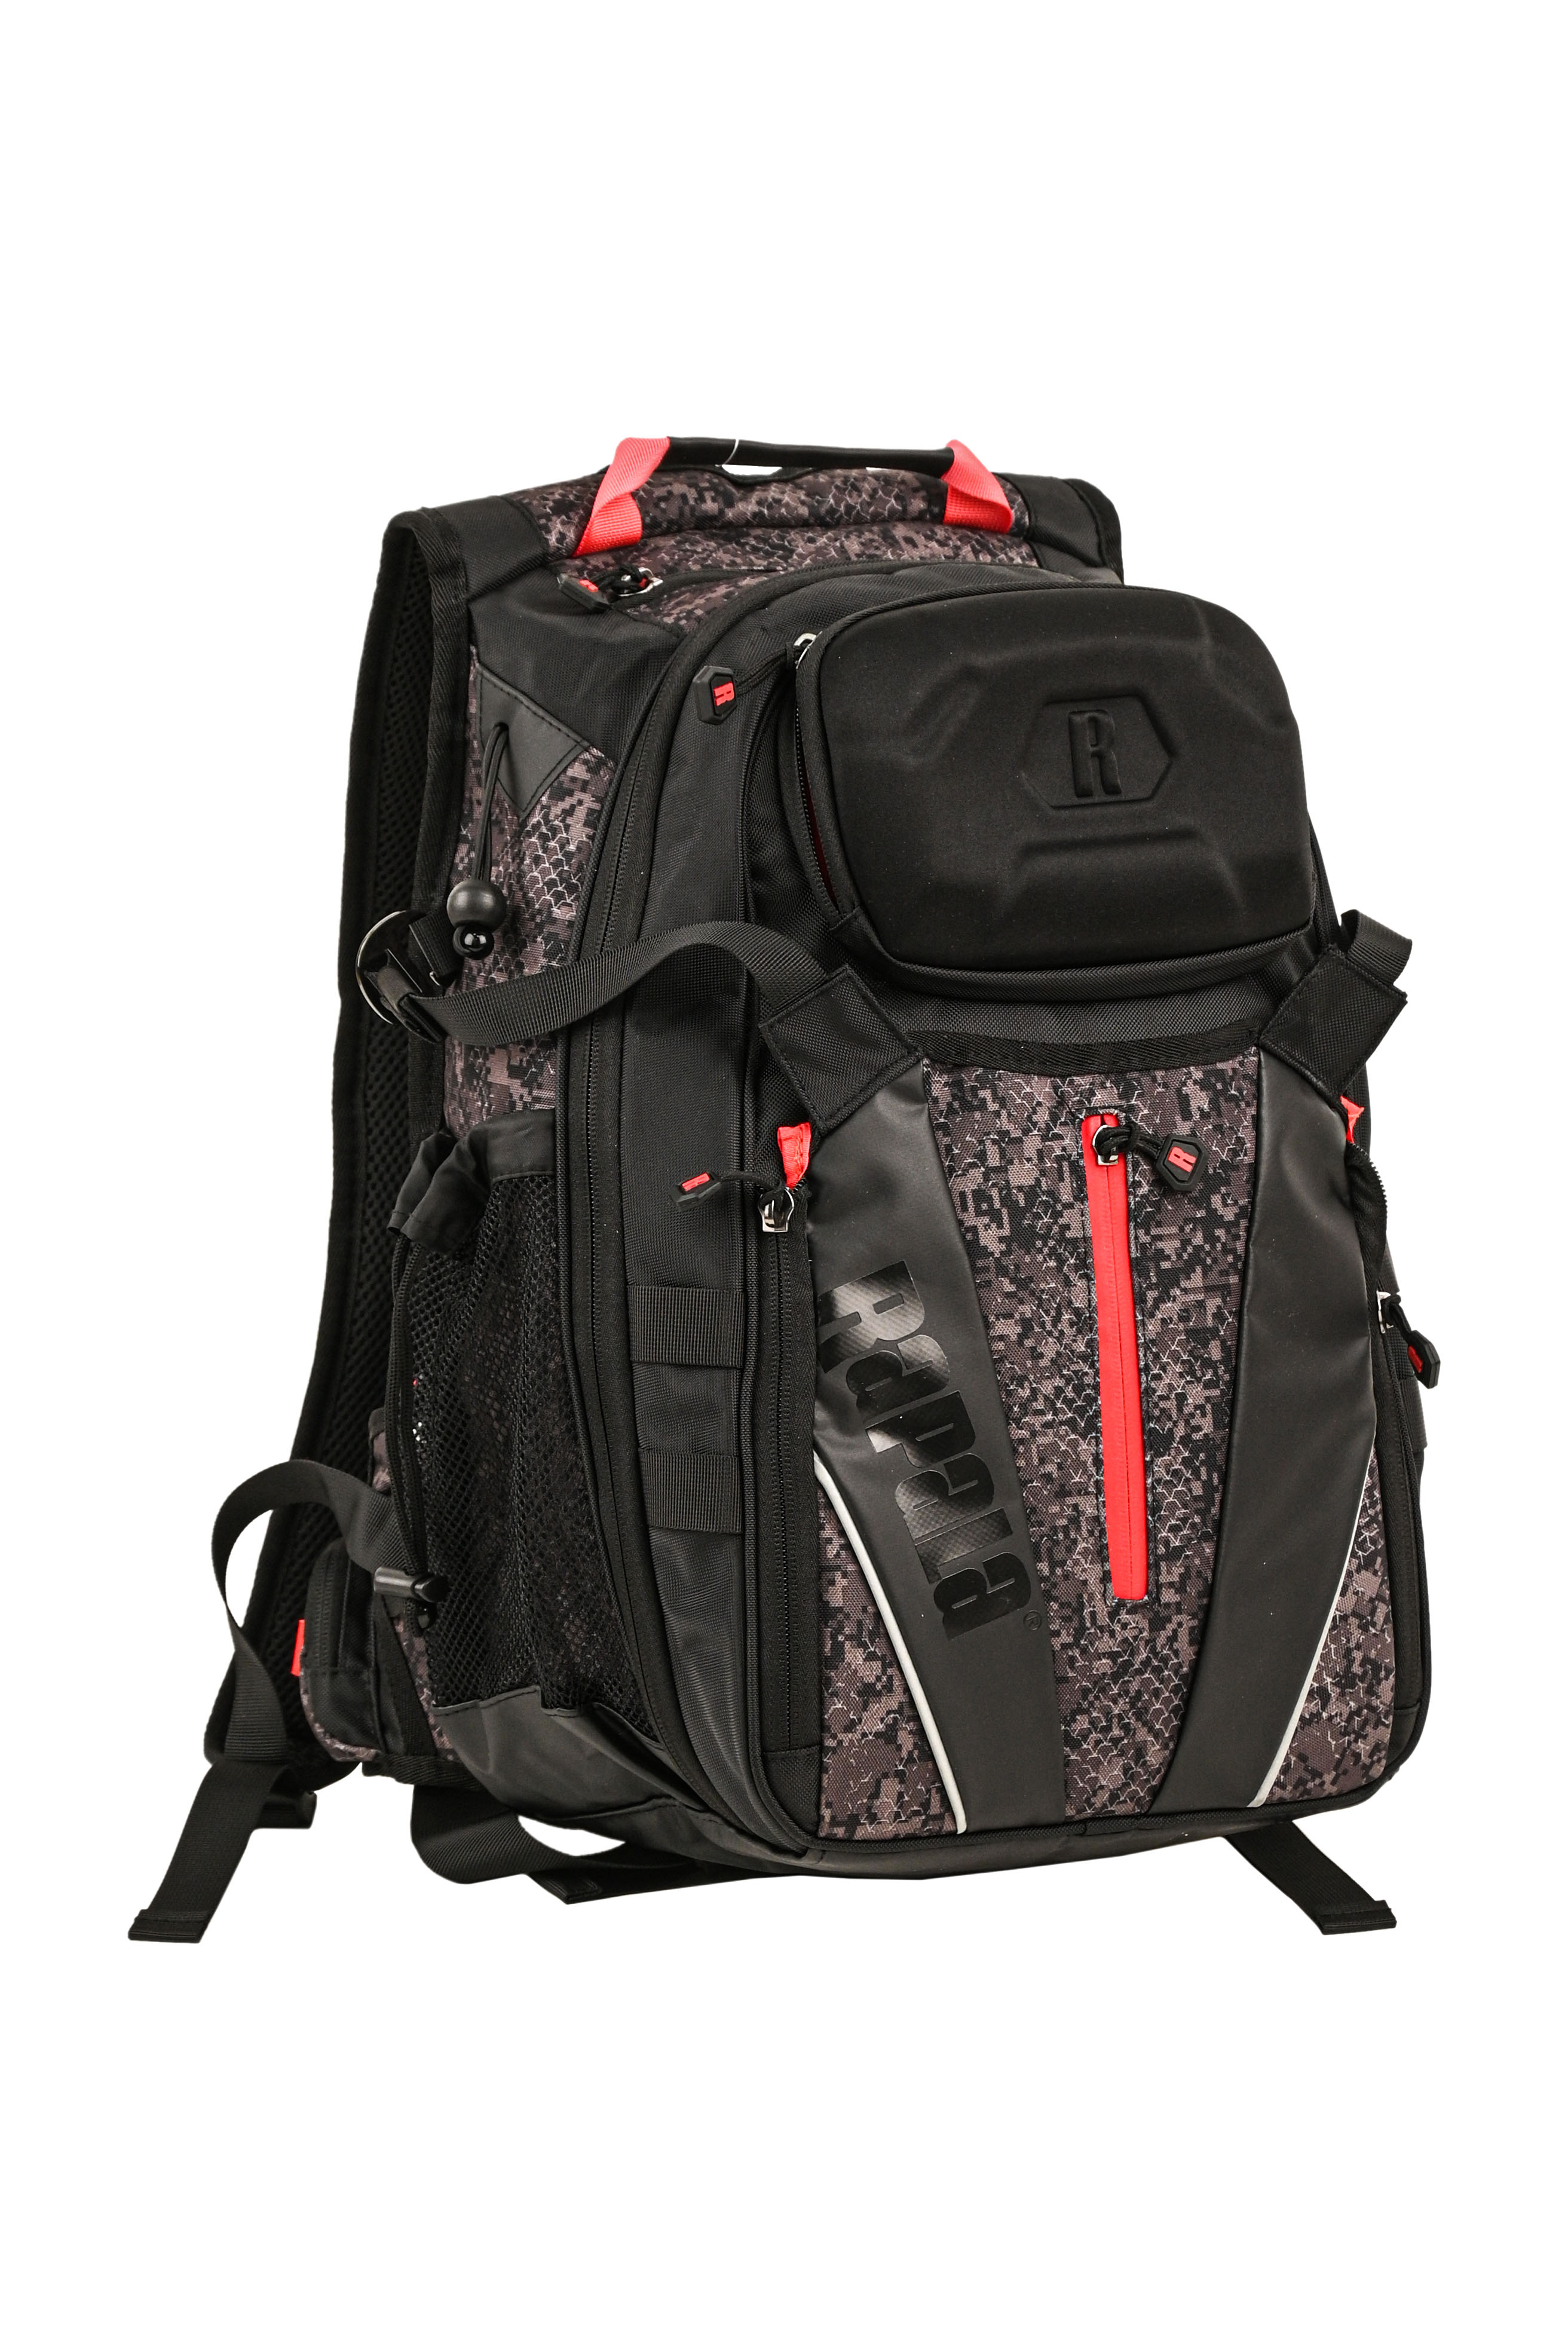 Рюкзак Rapala Urban back pack со съемной поясной сумкой - фото 1